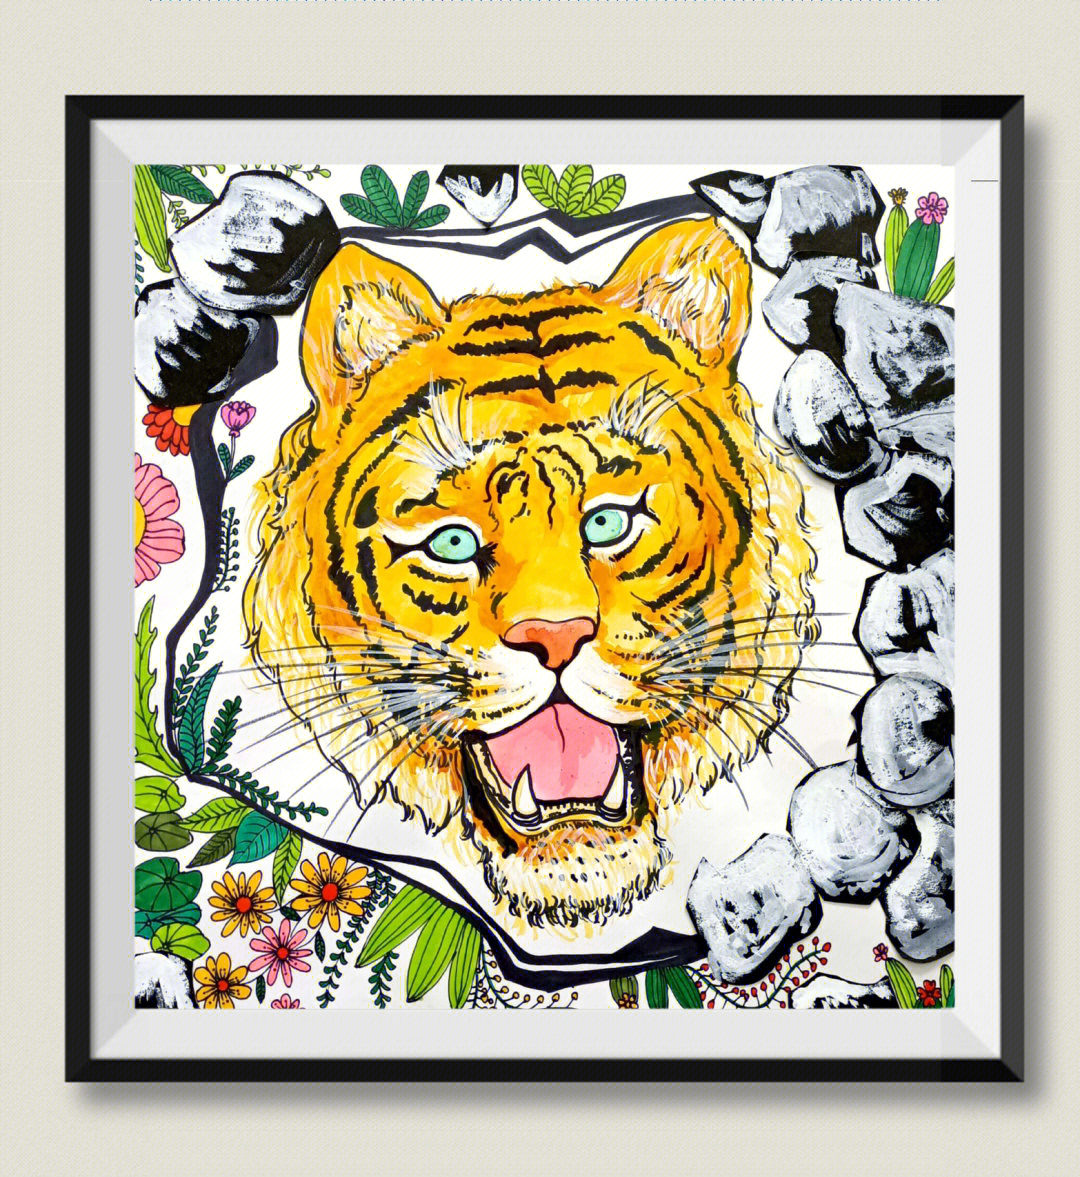 创意美术,少儿绘画,动物插画,老虎装饰画课程名称:《老虎出洞》适合